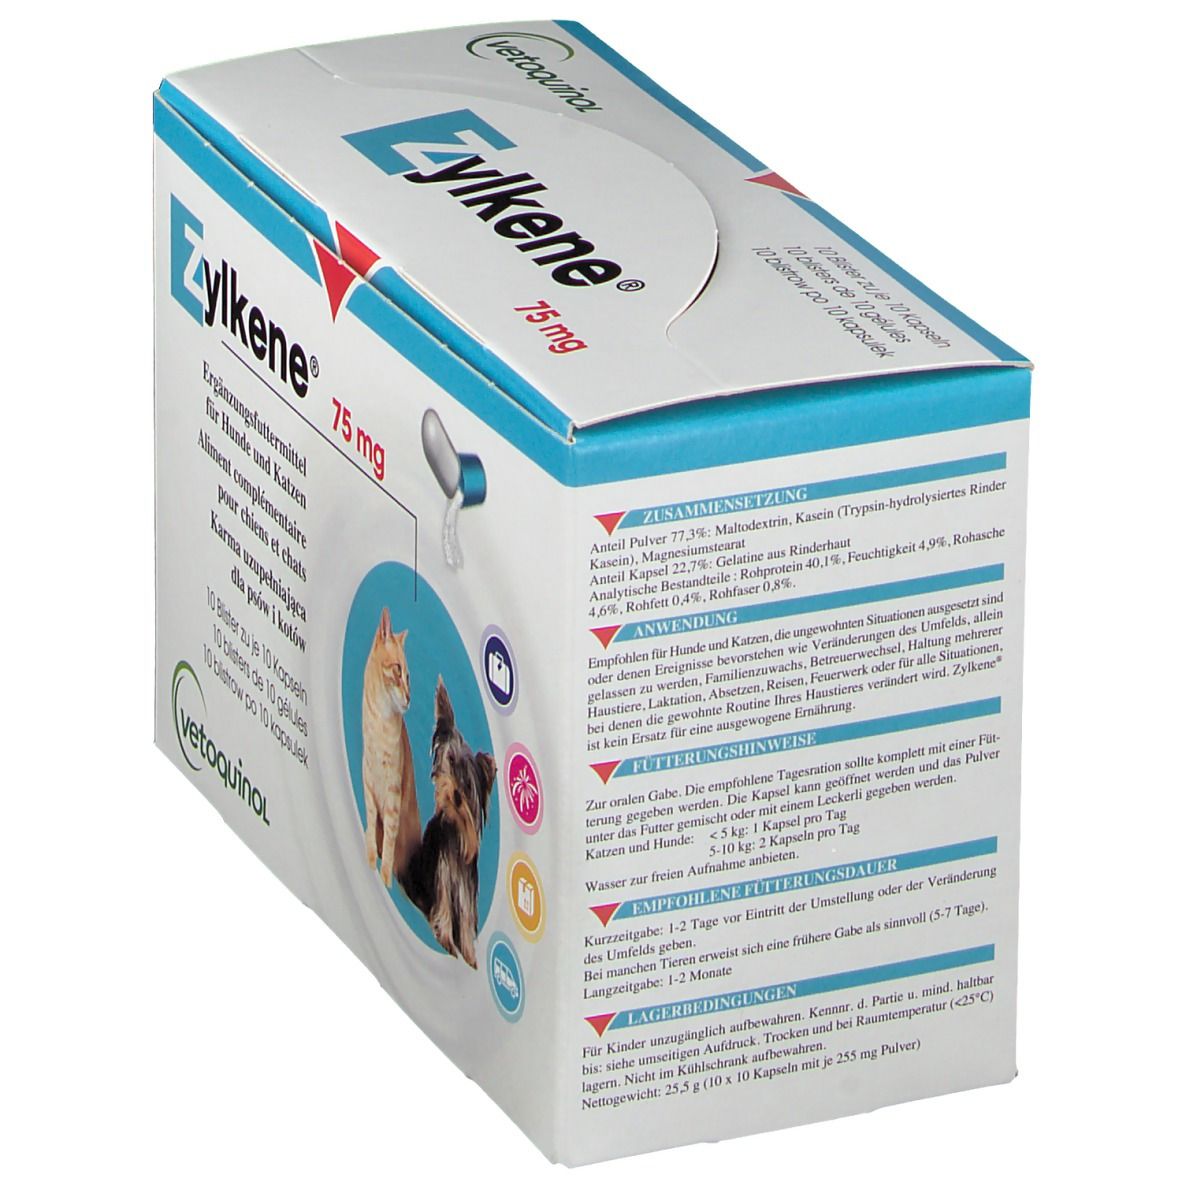 Zylkène® 75 mg für Hunde und Katzen